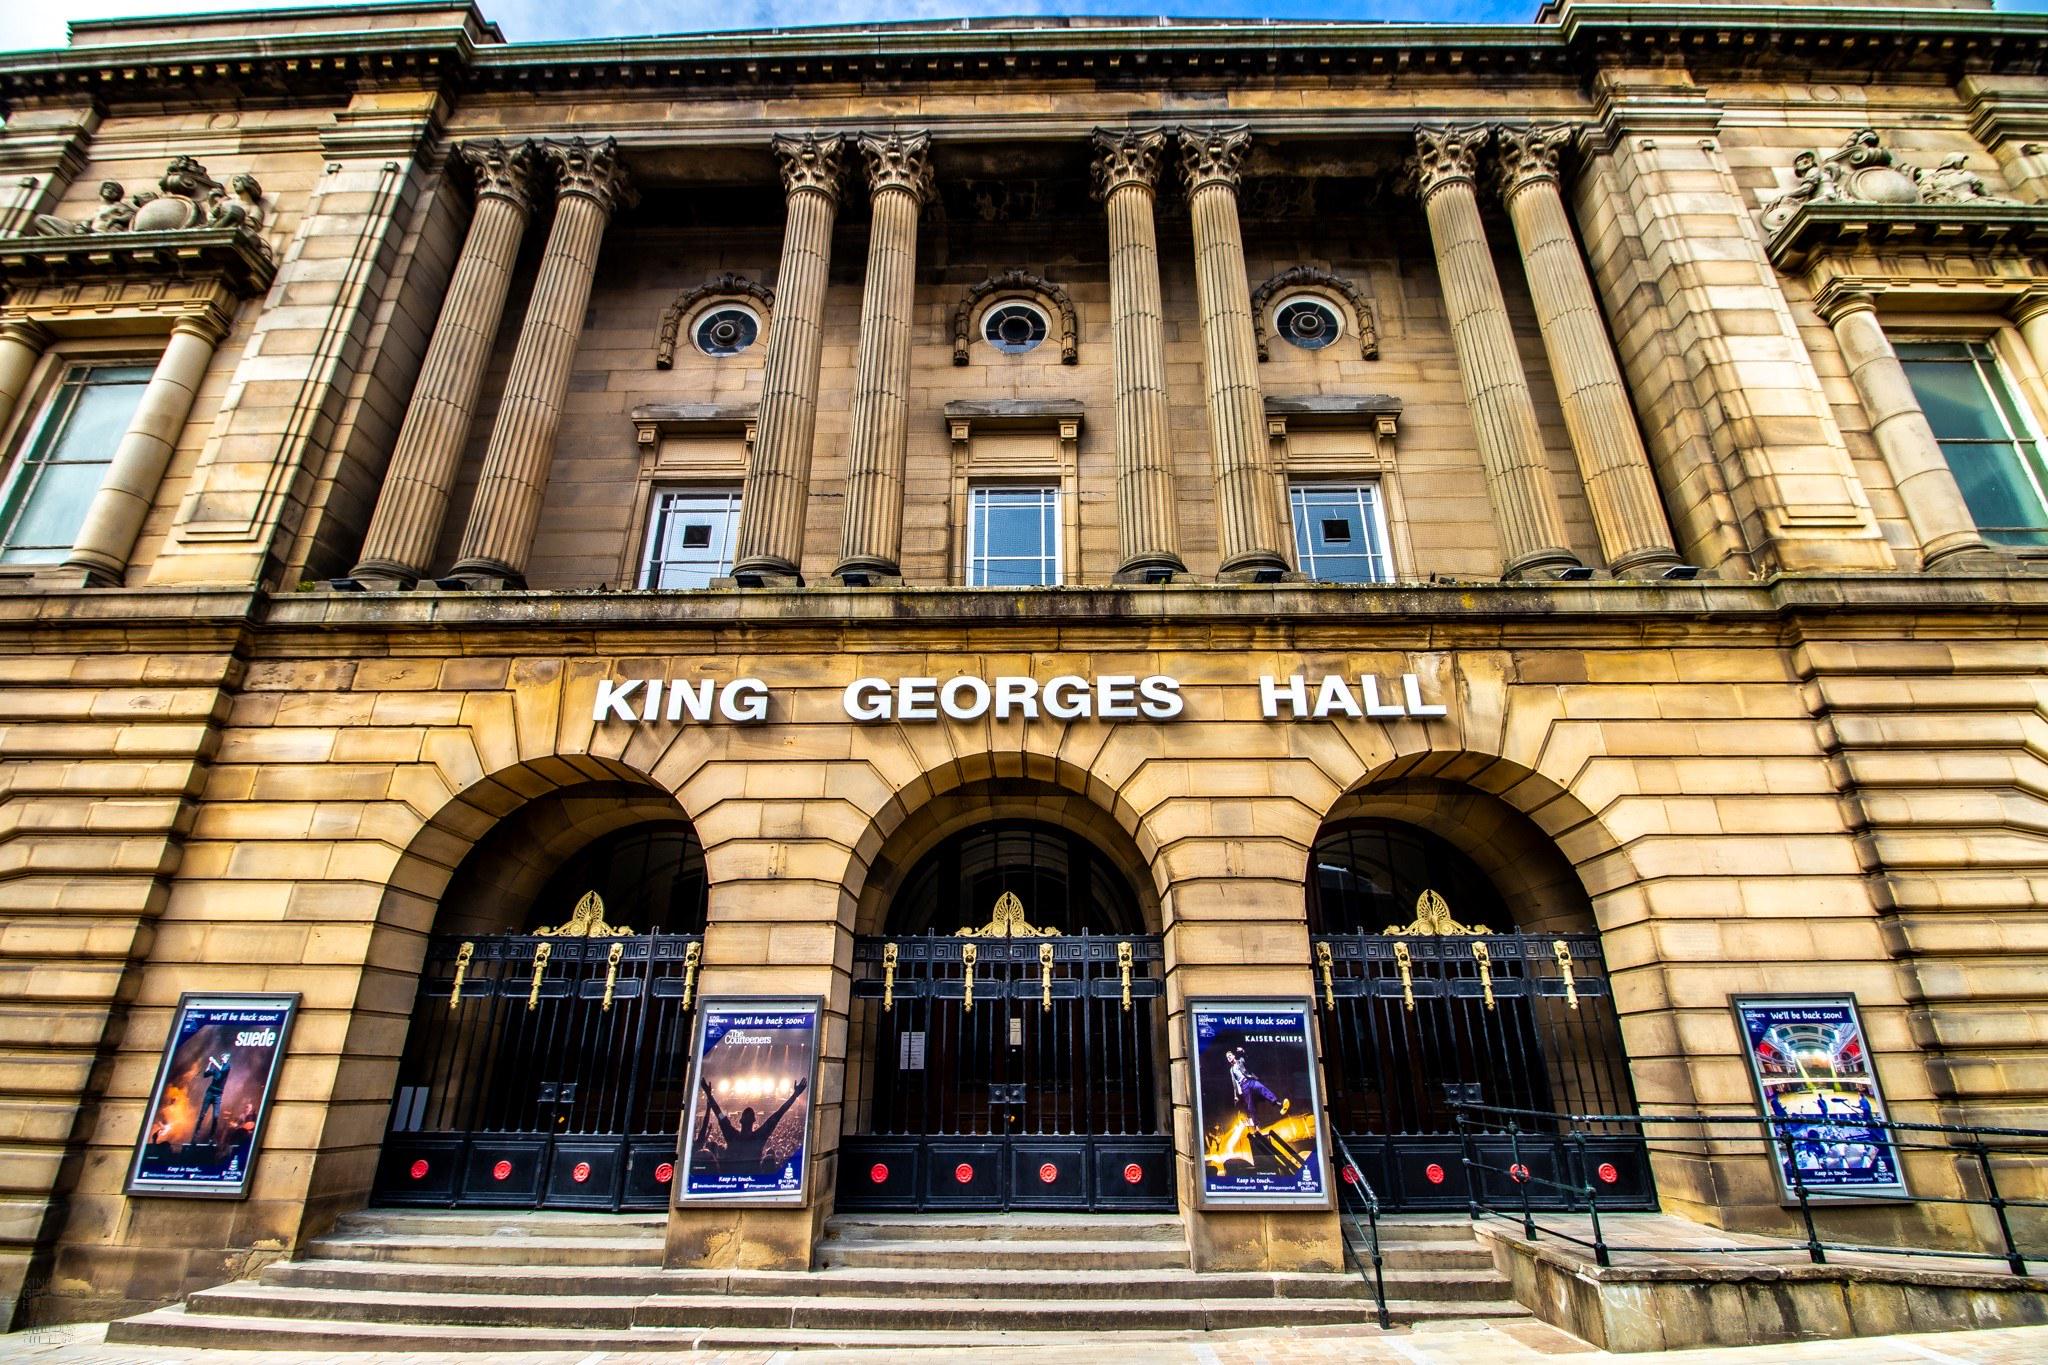 King George's Hall